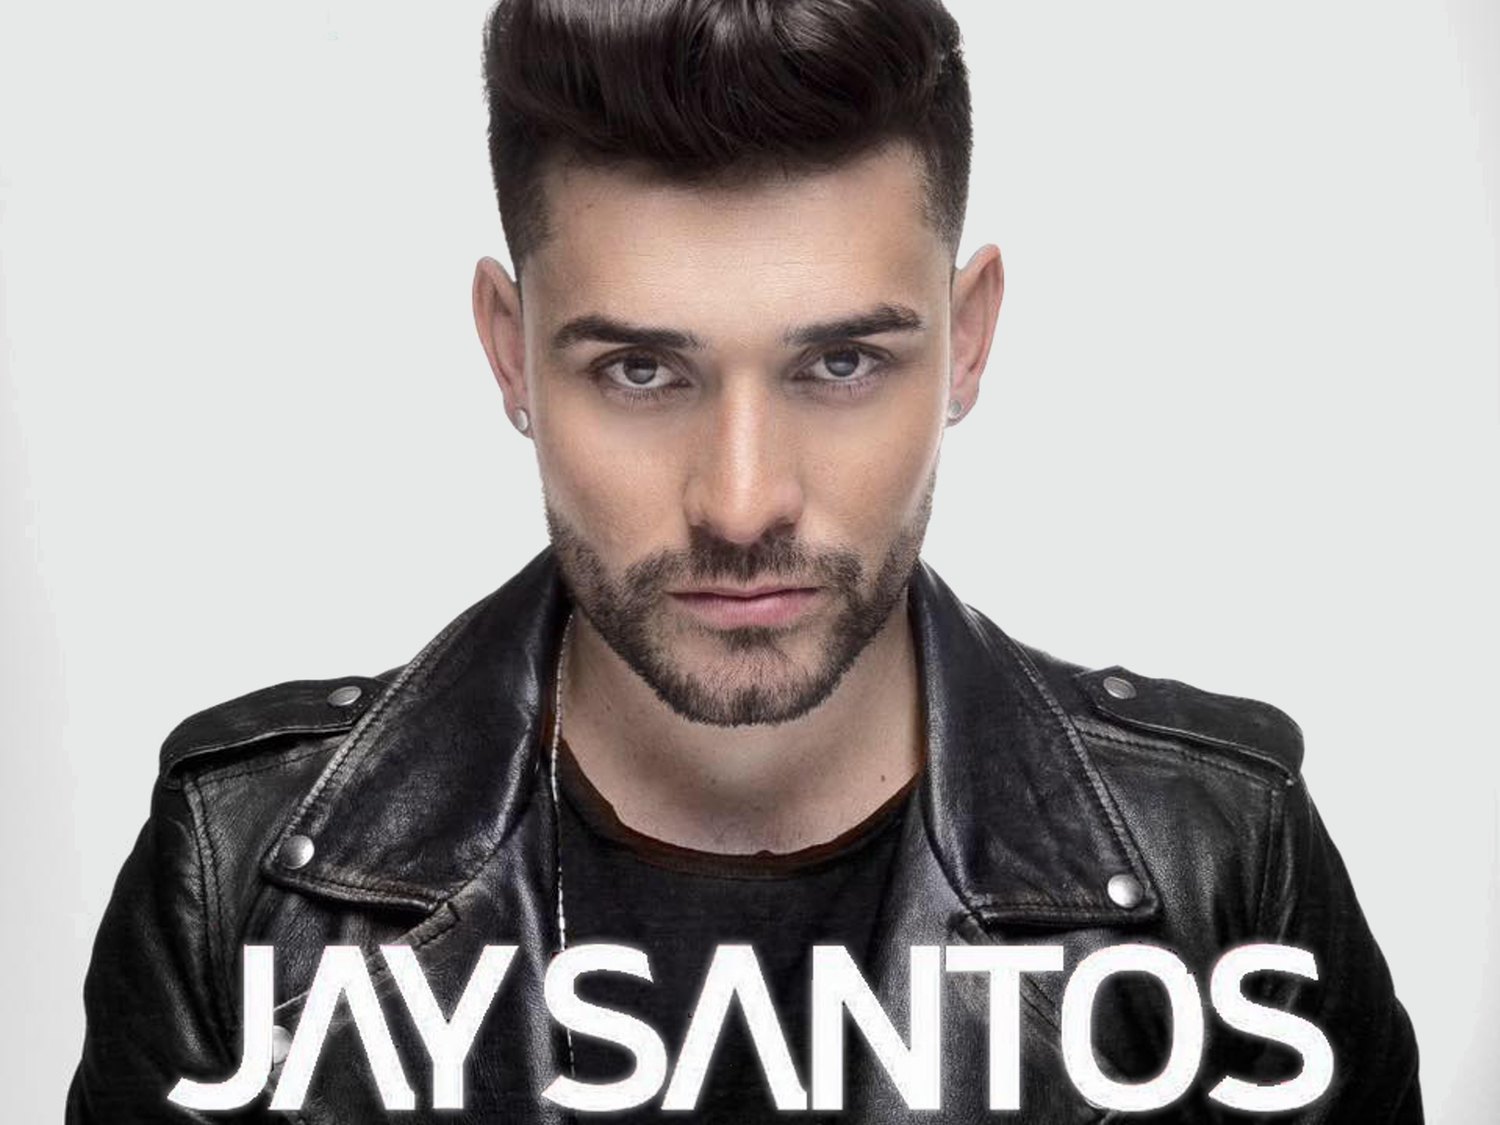 Detenido en Málaga el cantante de reggaetón Jay Santos, condenado por violar a una joven en 2017